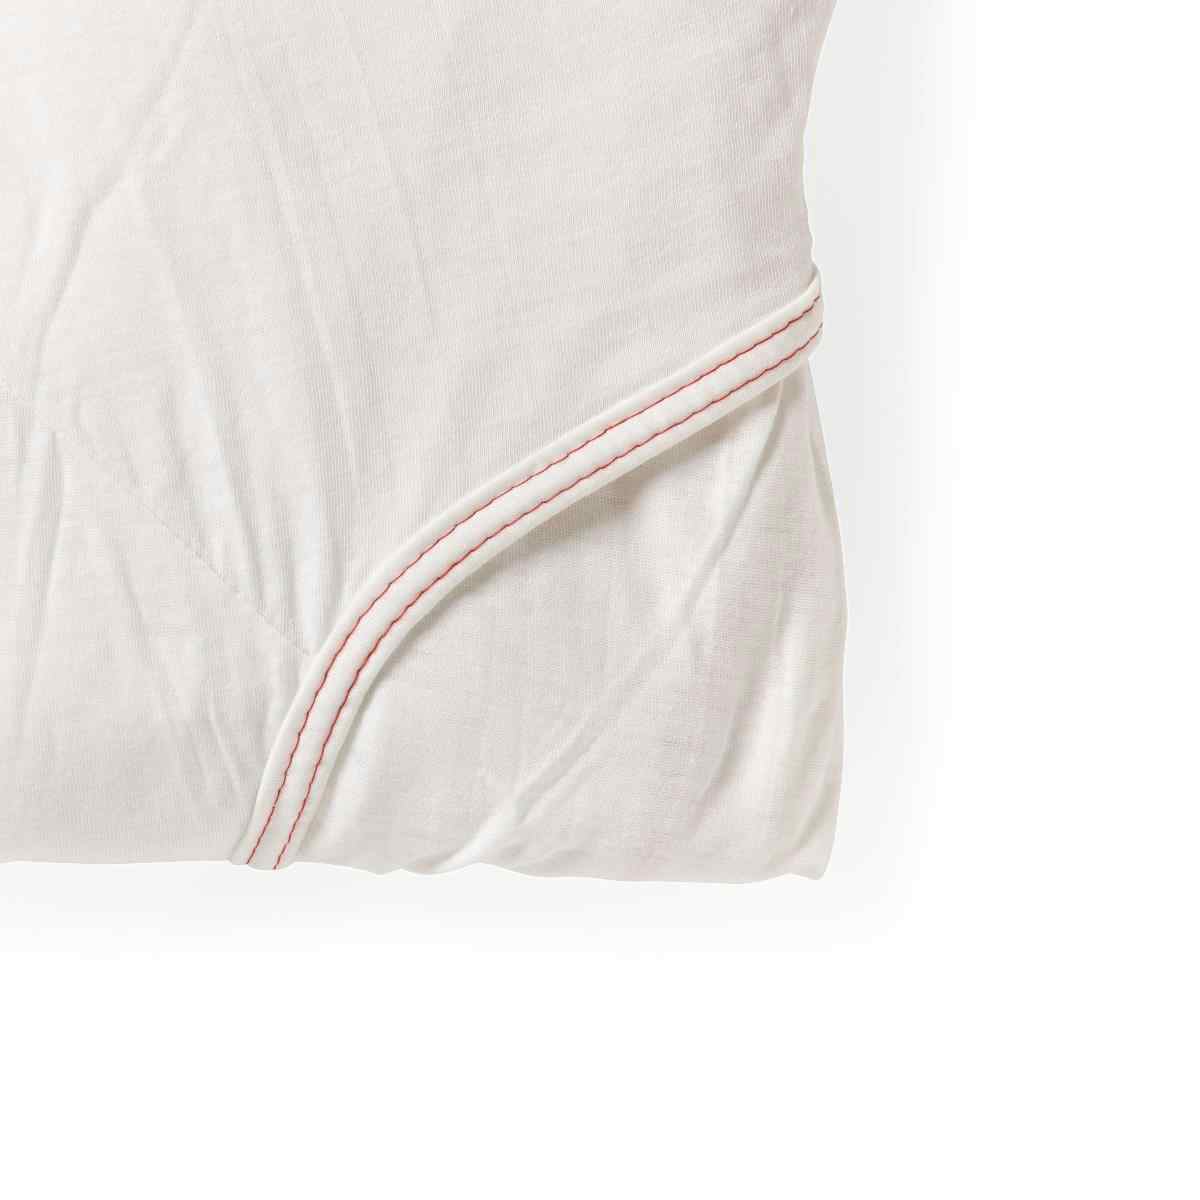 Medline Soft-Fit Knitted Flat Sheets, MDTDEALERPKH, White - One Size Fits Most - 1 Set